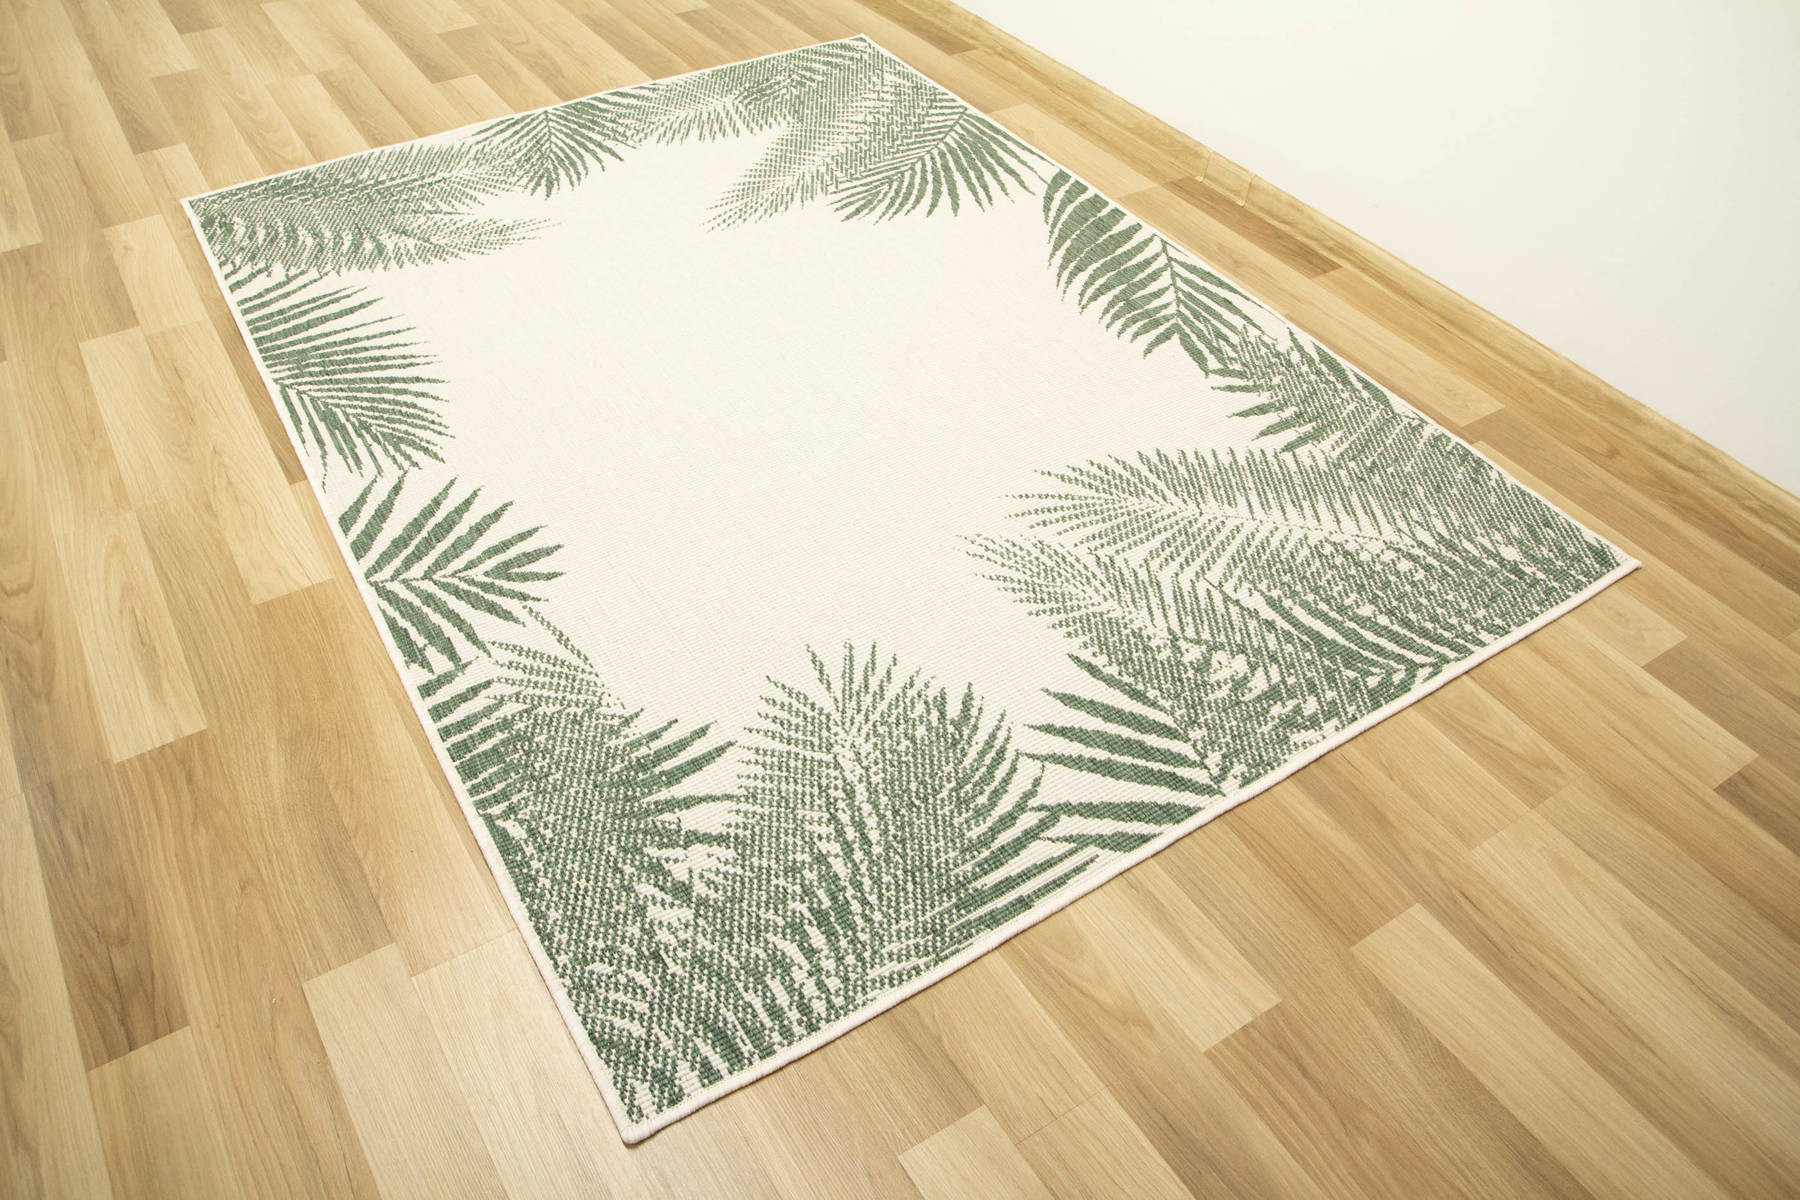 Šnúrkový obojstranný koberec Brussels 205183/10520 zelený